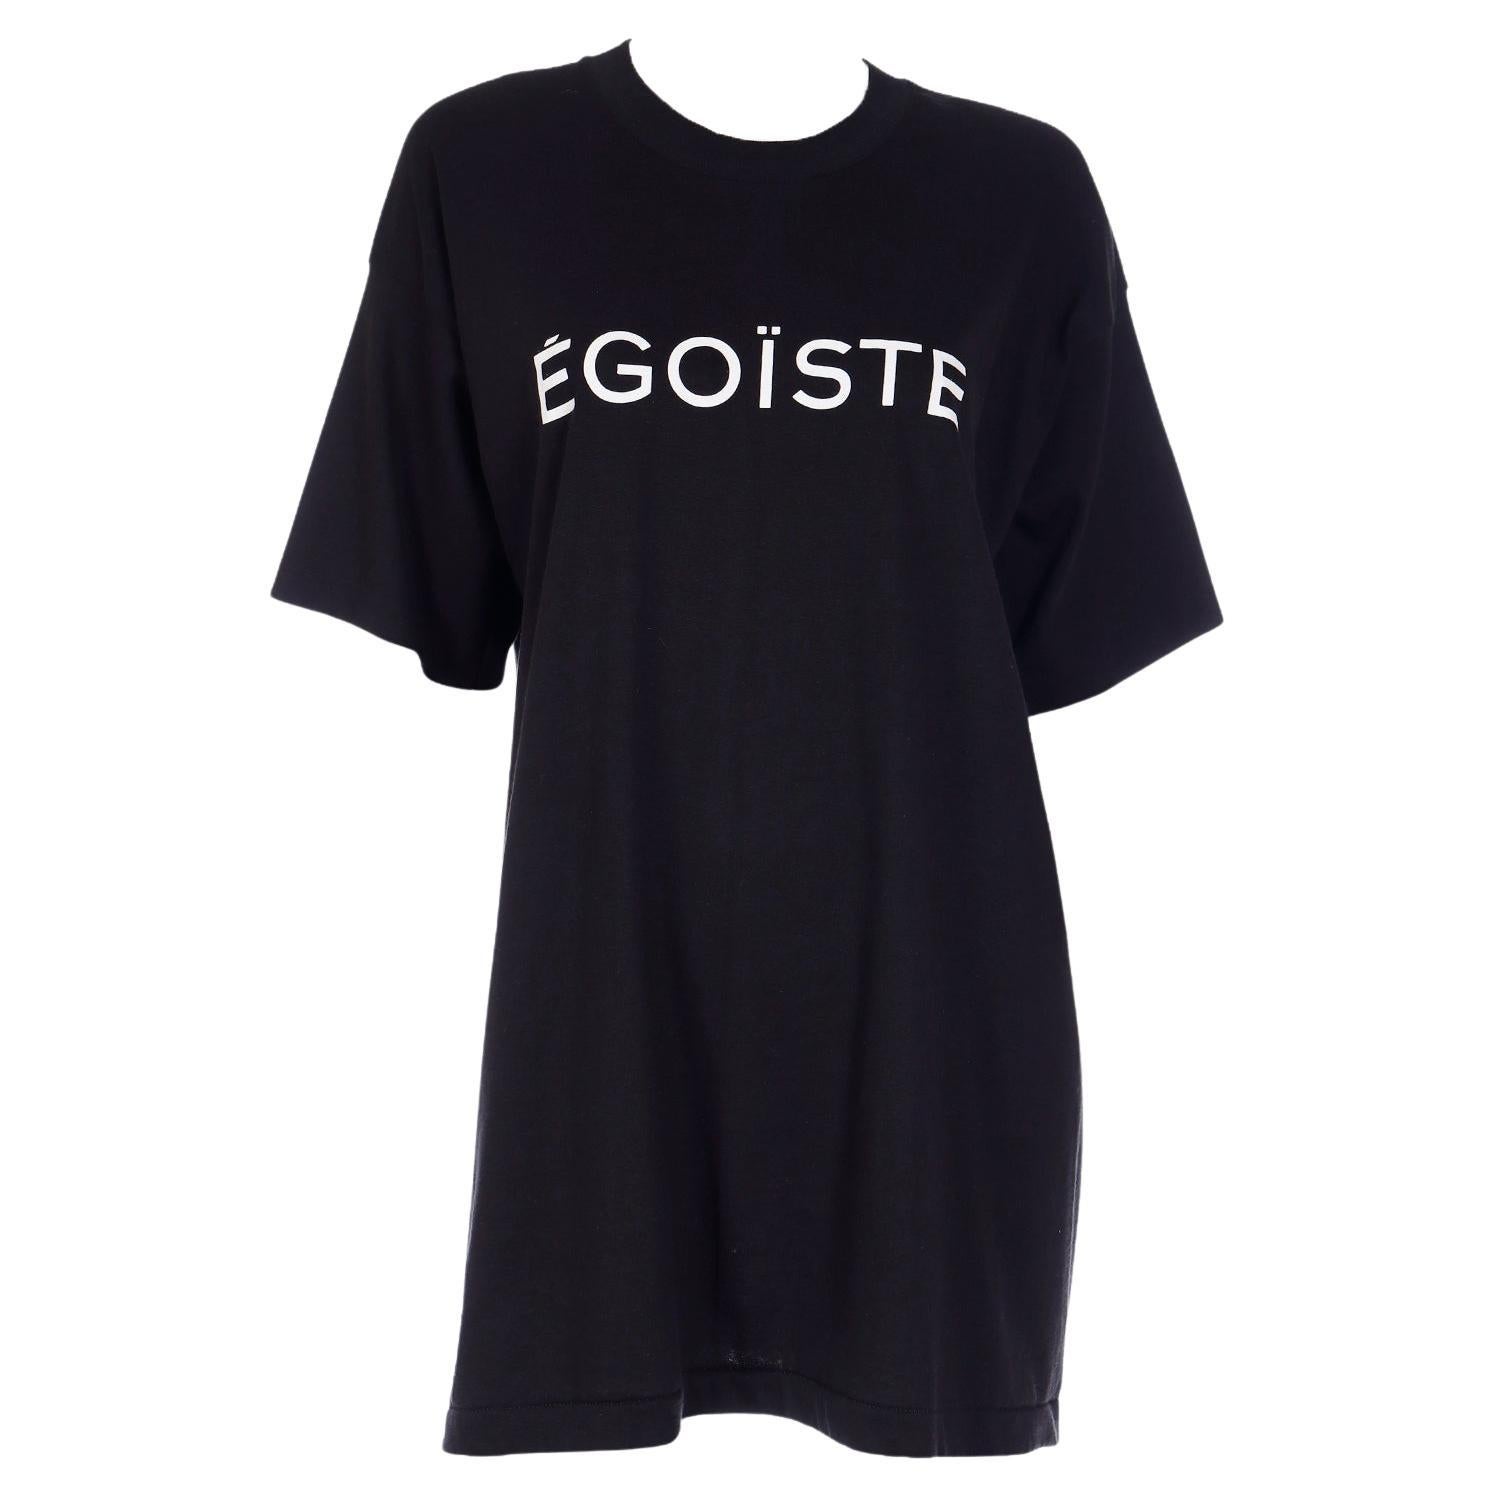 T-shirt de campagne promotionnel en coton noir et blanc Egoiste de Chanel, 1990